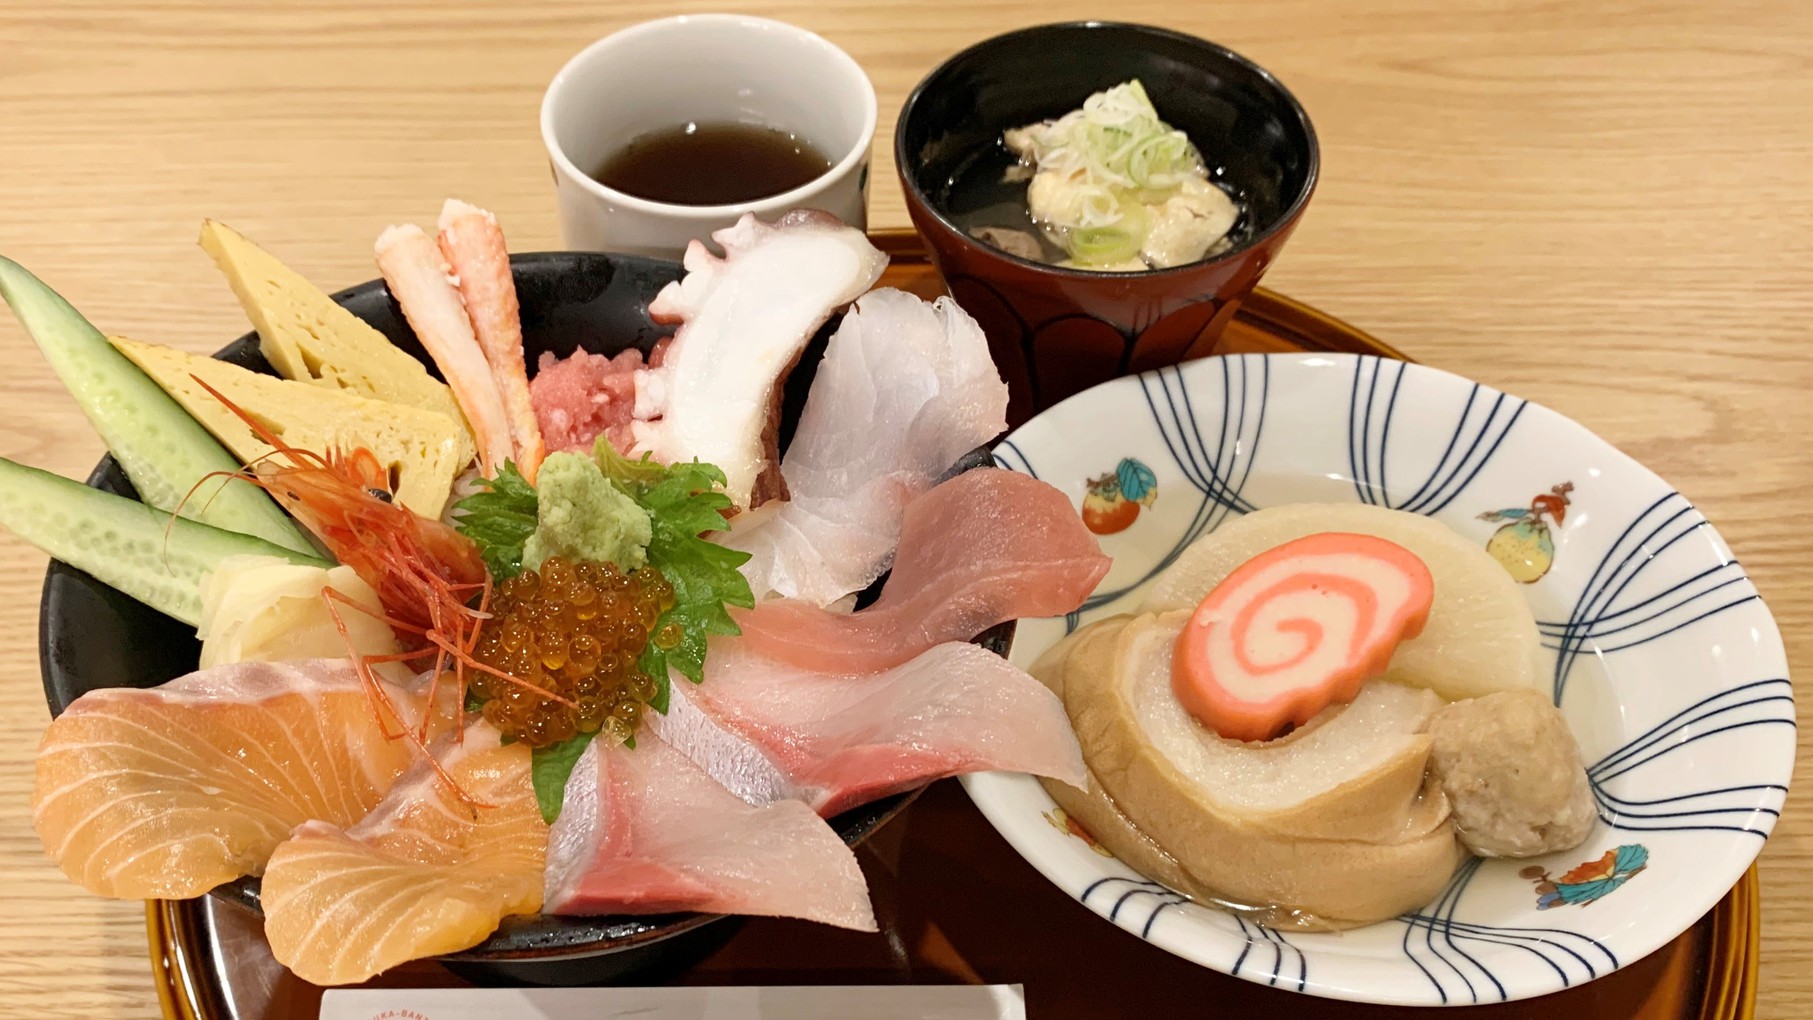 【SANRAKU×能加万菜】金沢の台所・近江町市場で「のど黒・能登牛・海鮮丼」を味わう朝食券付プラン